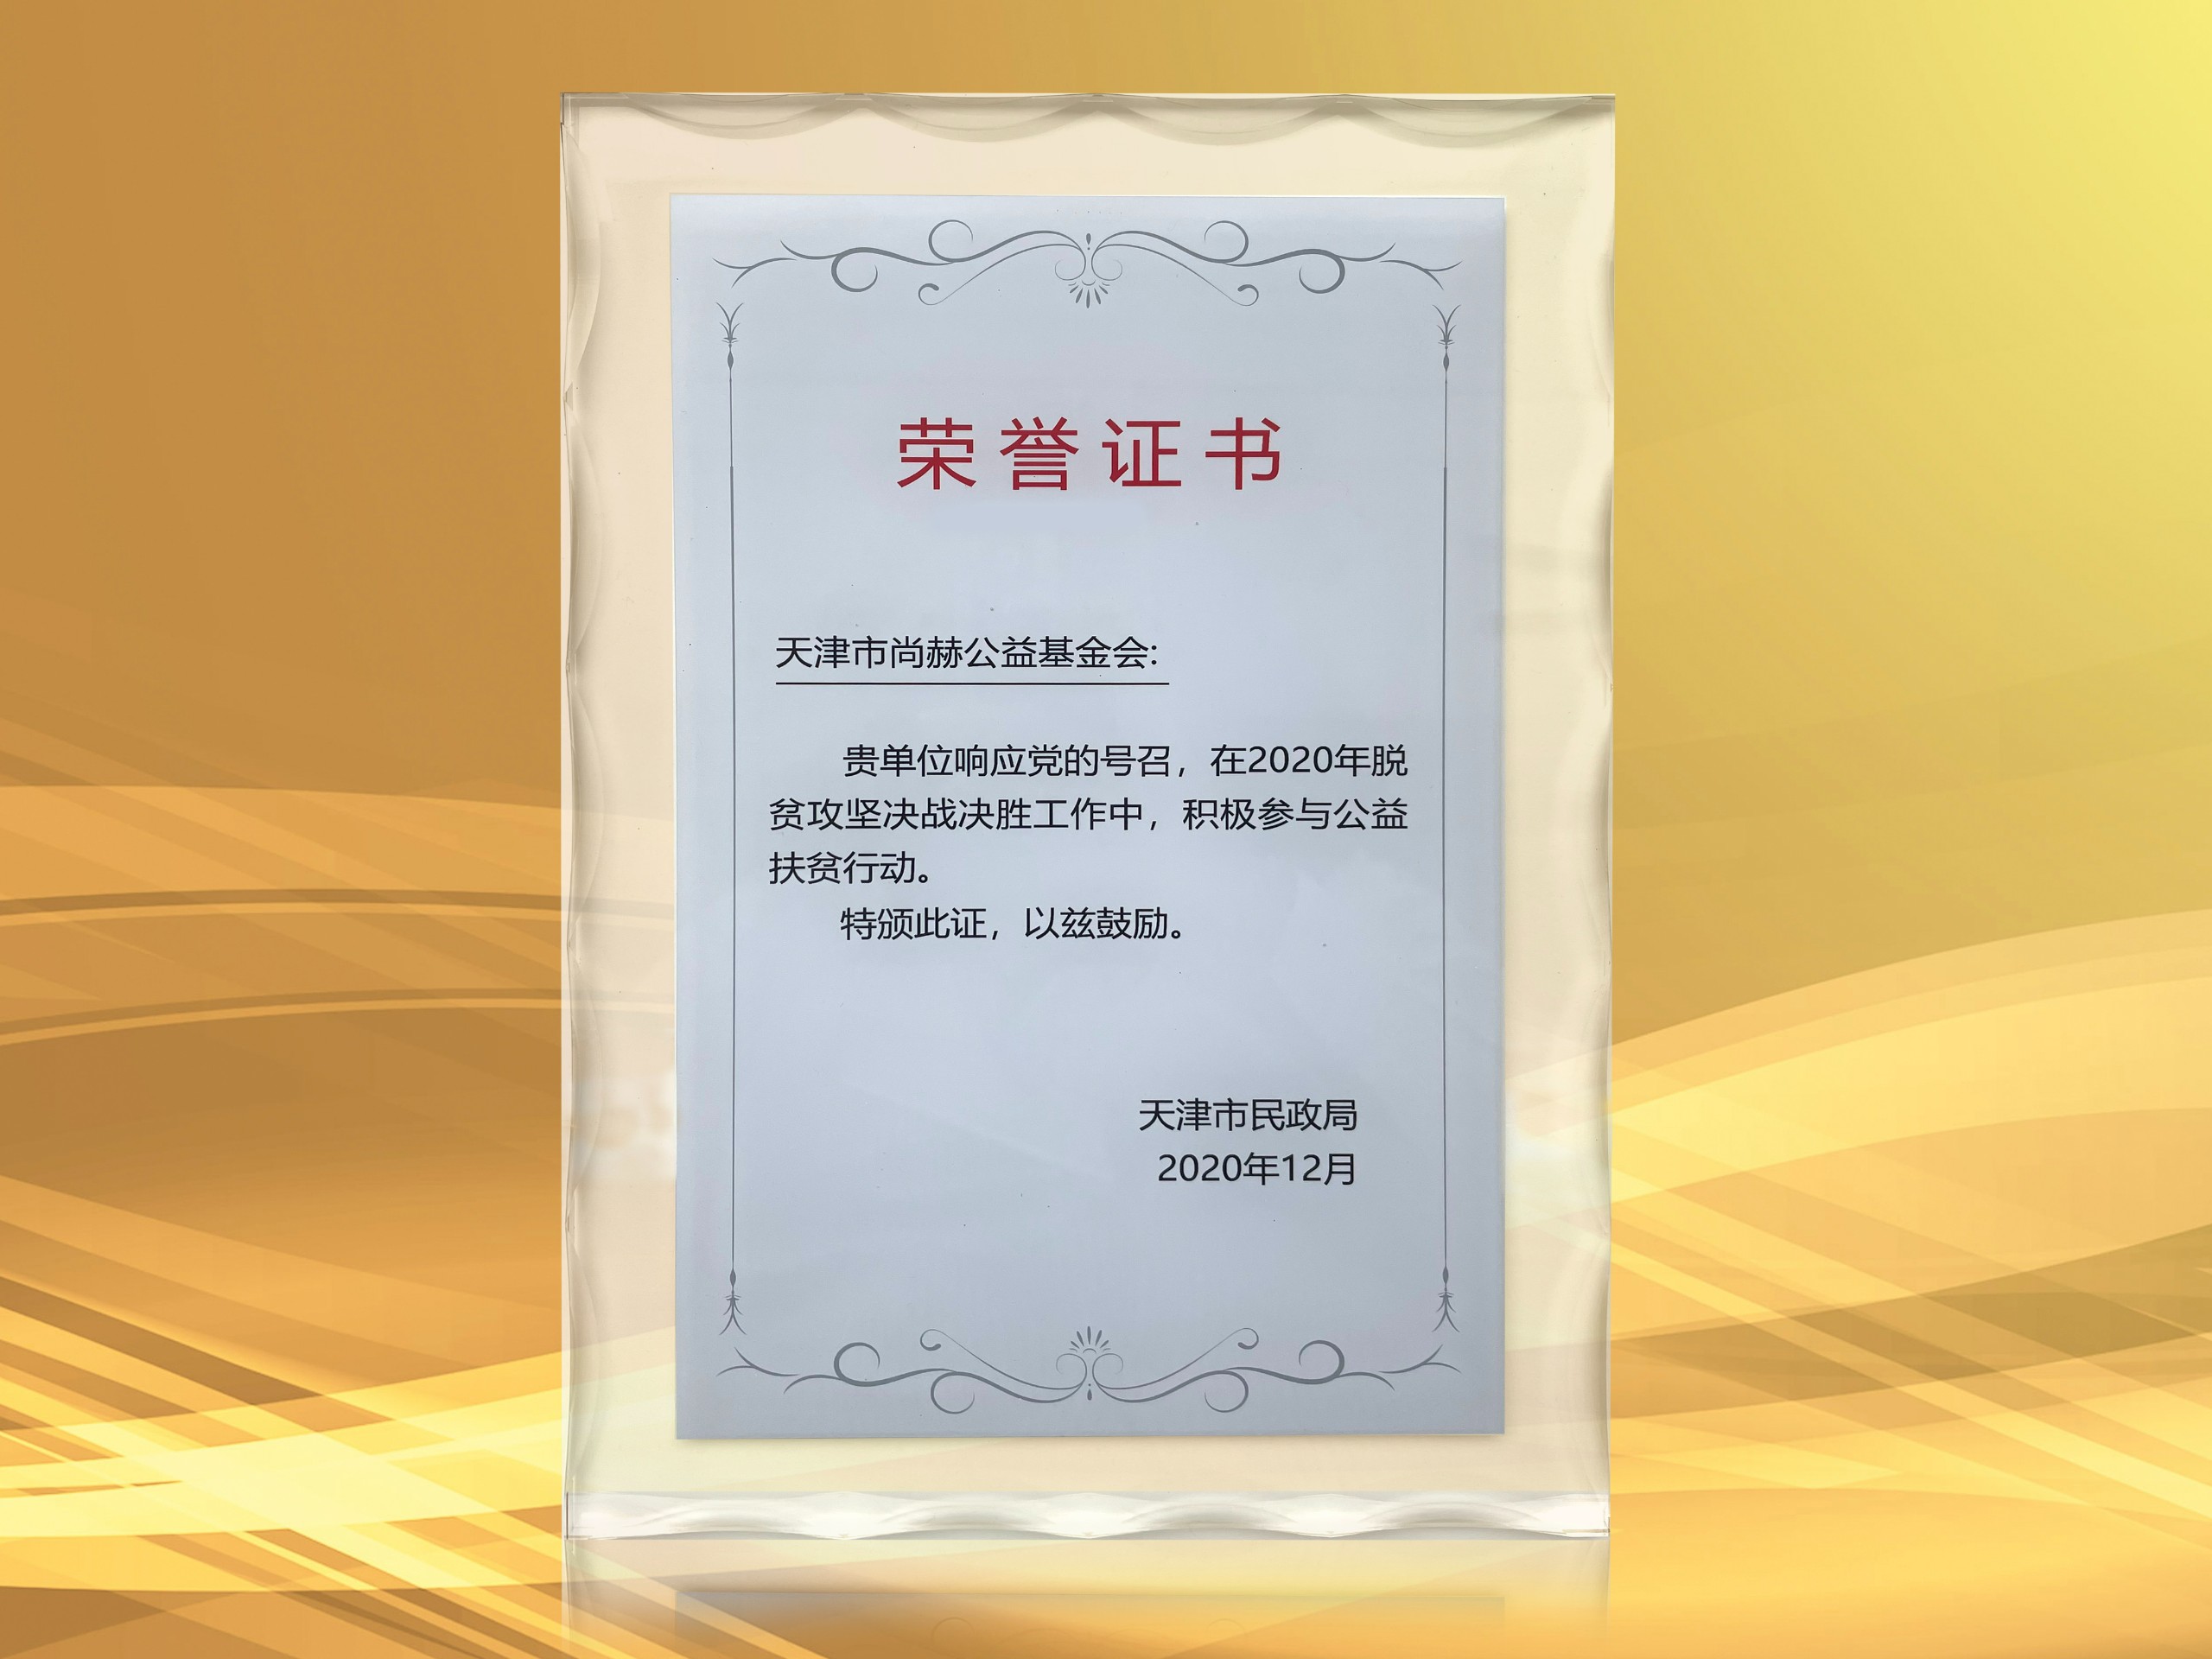 2021年3月-皇家体育(中国)有限责任公司公益基金会获得天津市民政局颁发的荣誉证书